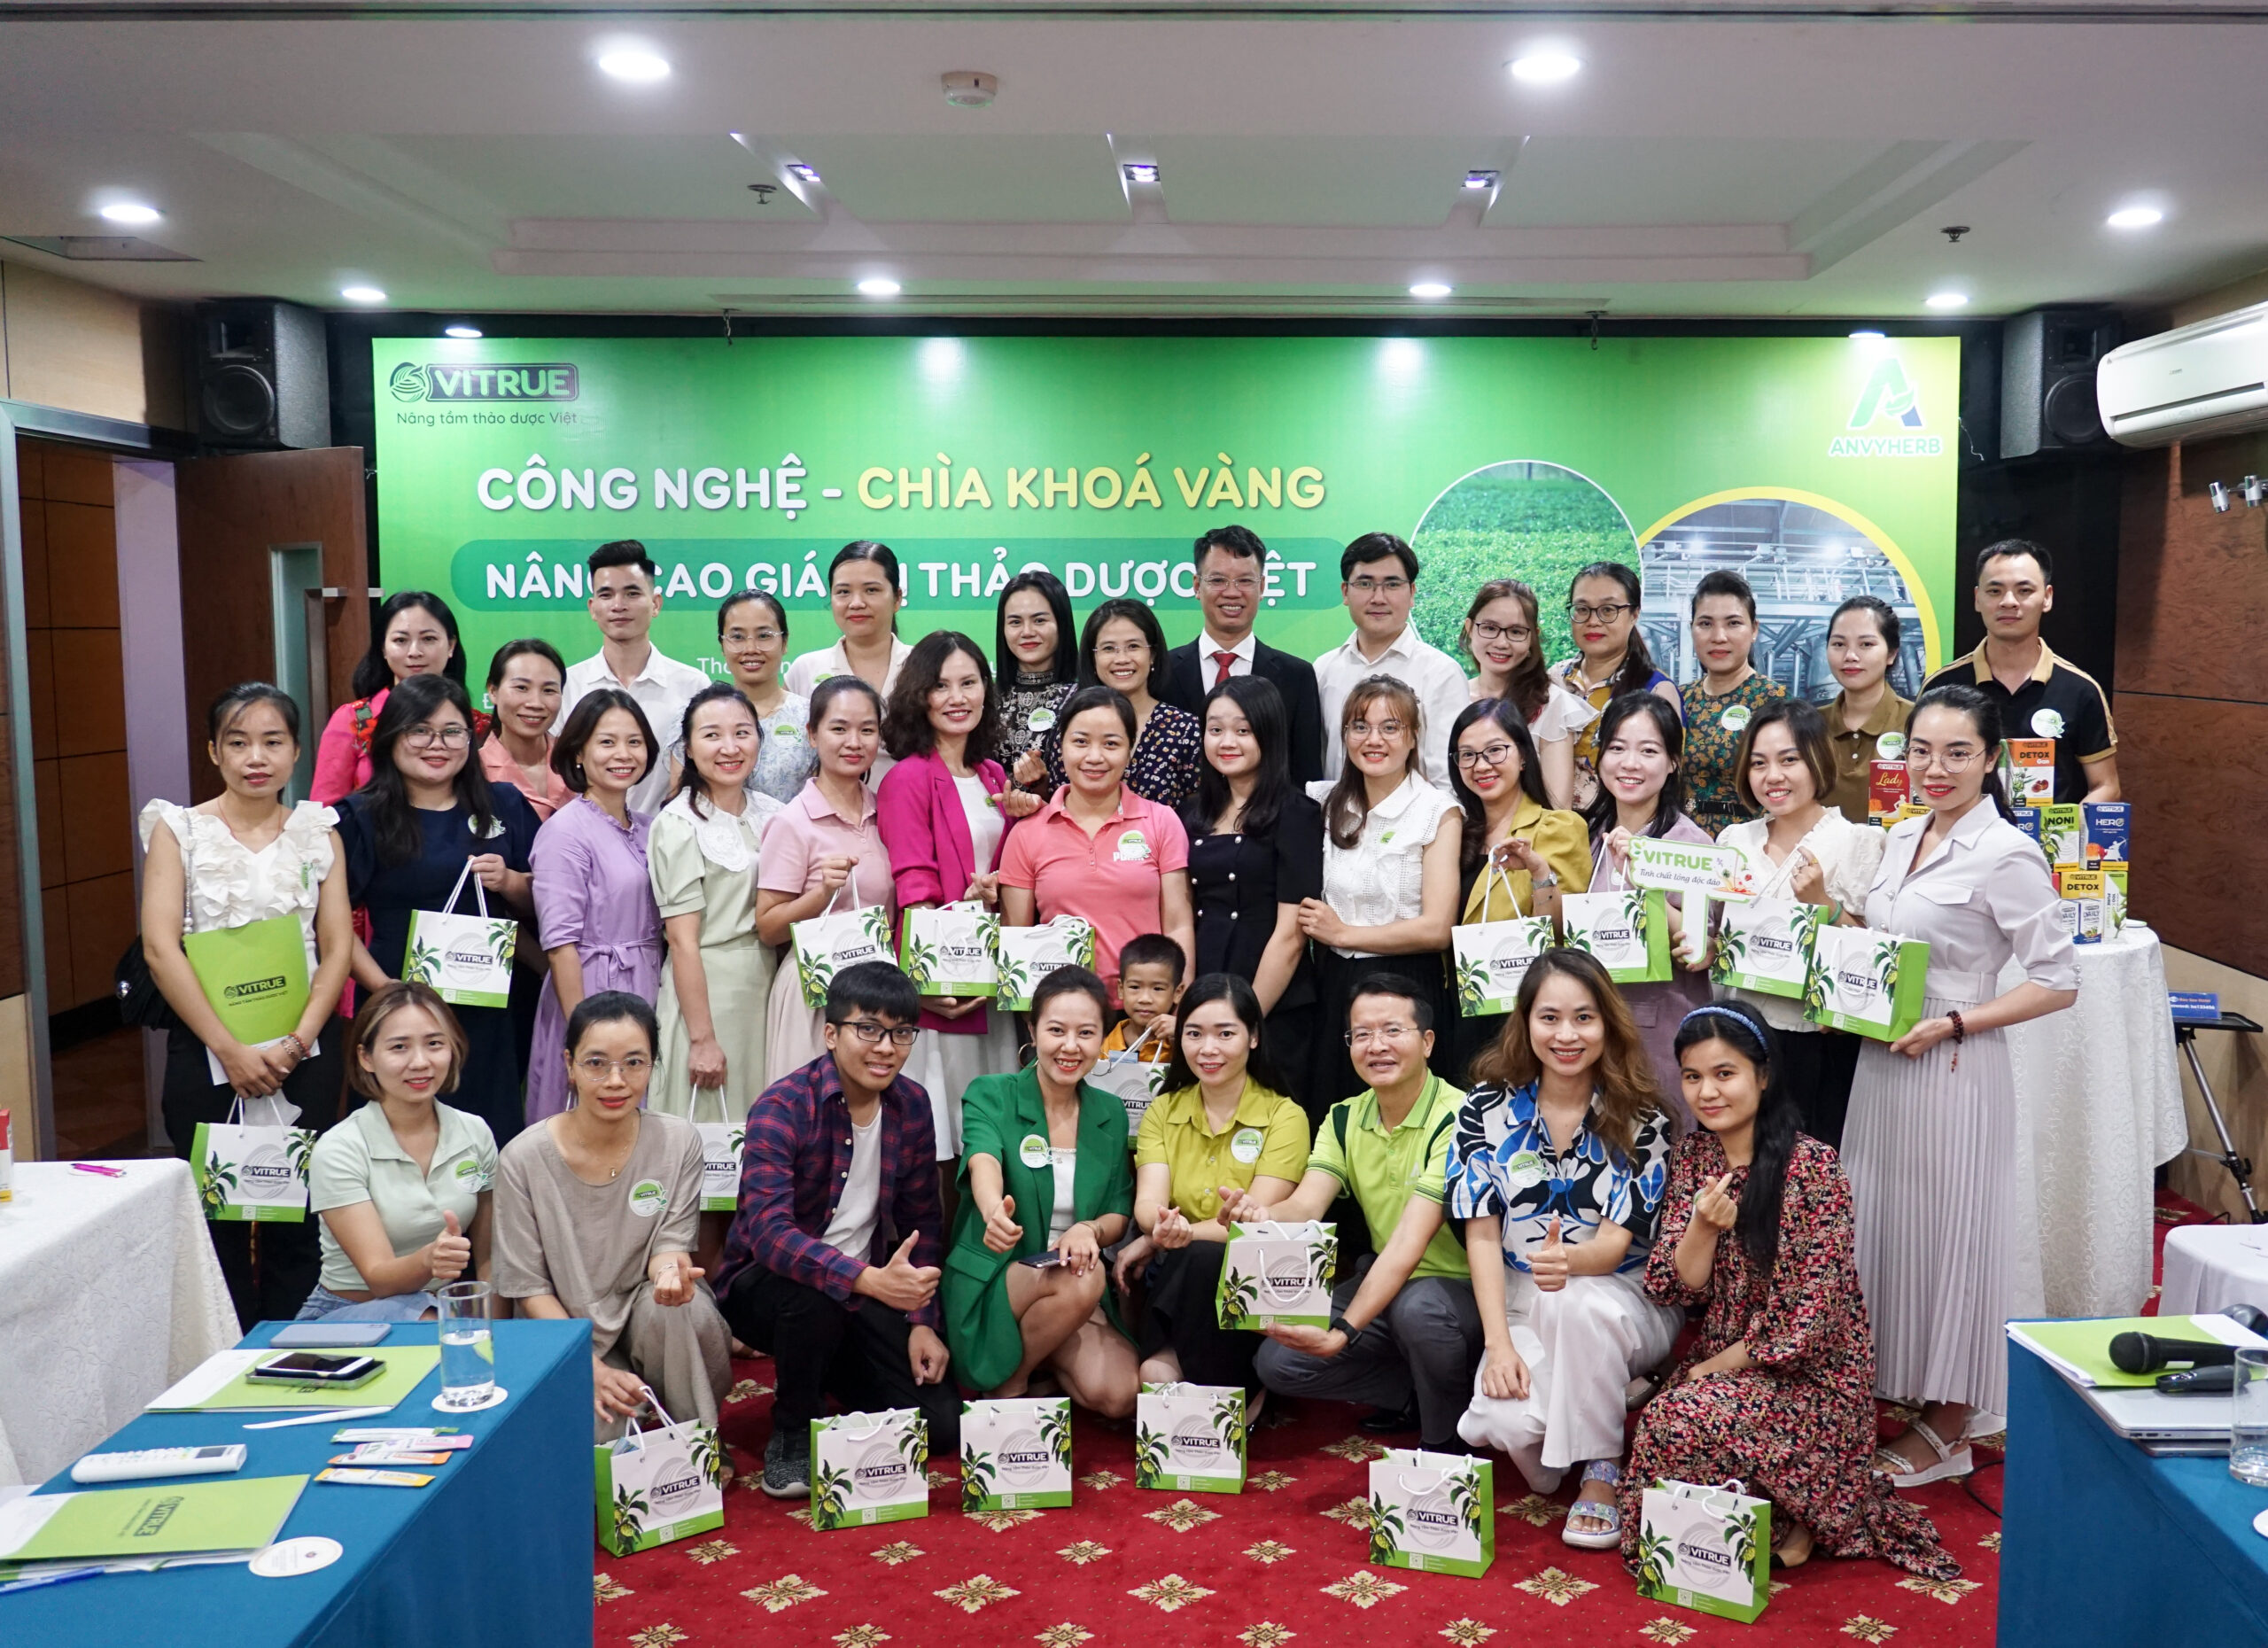 HÀ NỘI: Workshop “Công nghệ – Chìa khóa vàng nâng cao giá trị thảo dược Việt”